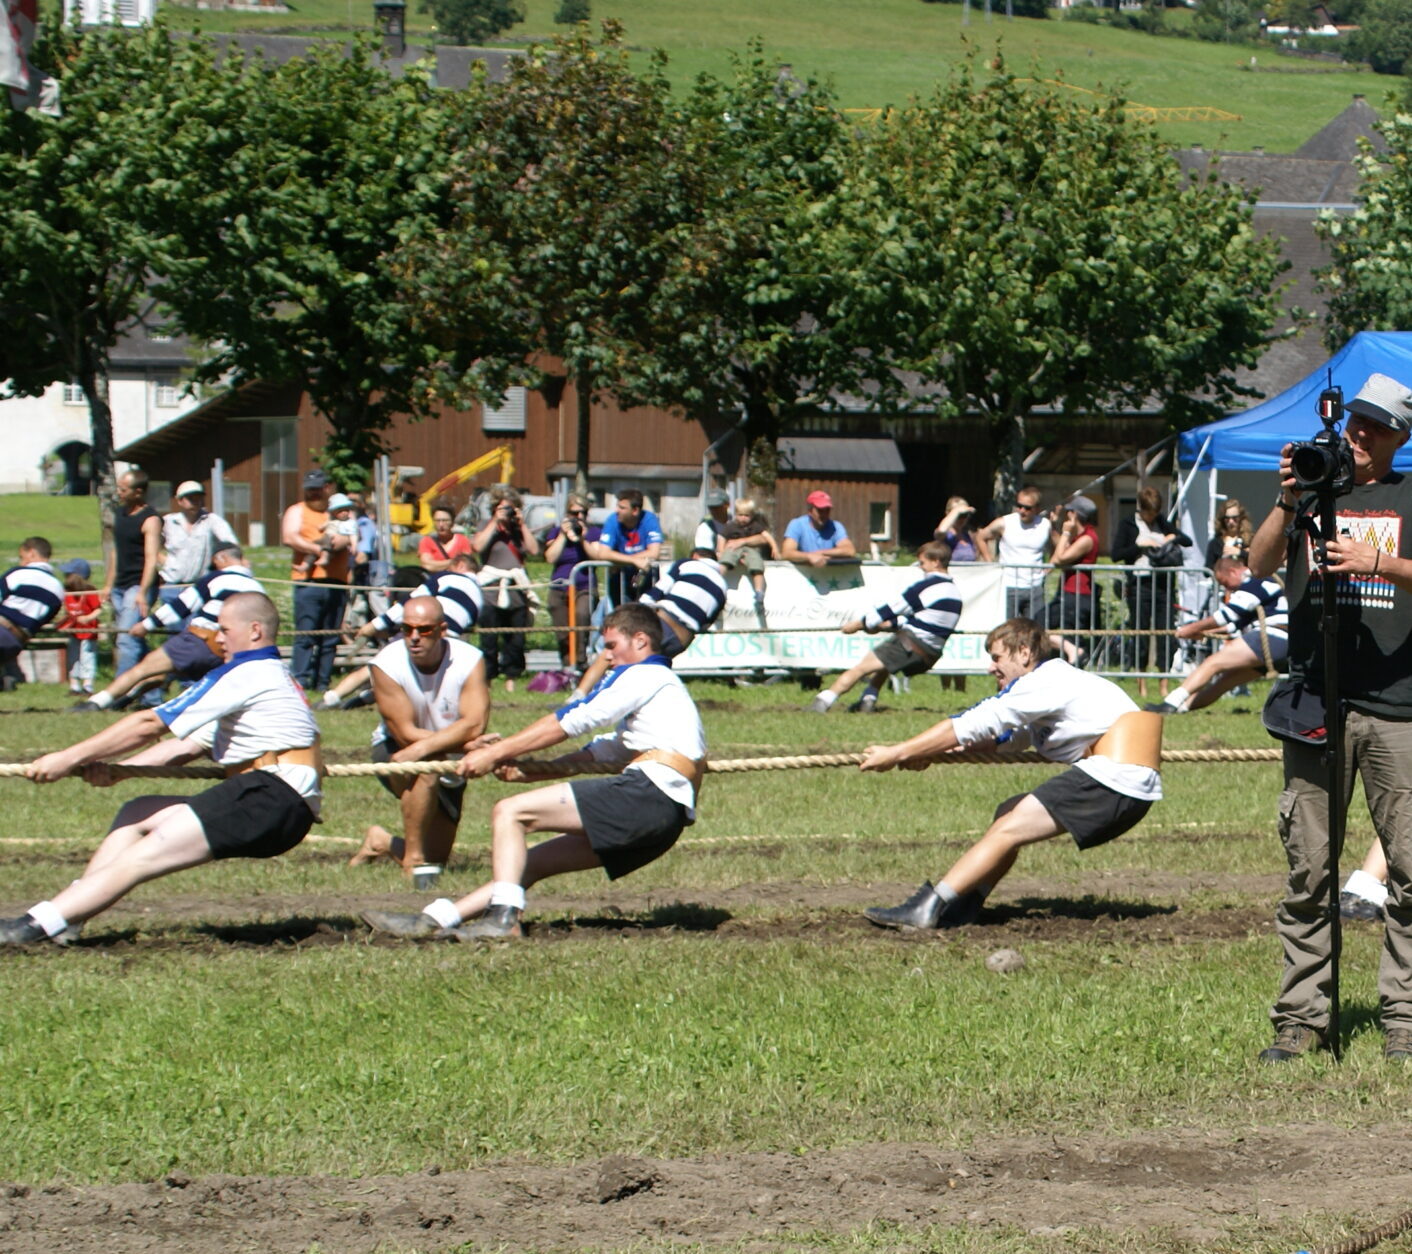 Ein Erinnerungsfoto aus dem Turnier in Engelberg im Jahr 2009. Sportliche Action und spannende Wettkämpfe auf dem Spielfeld.